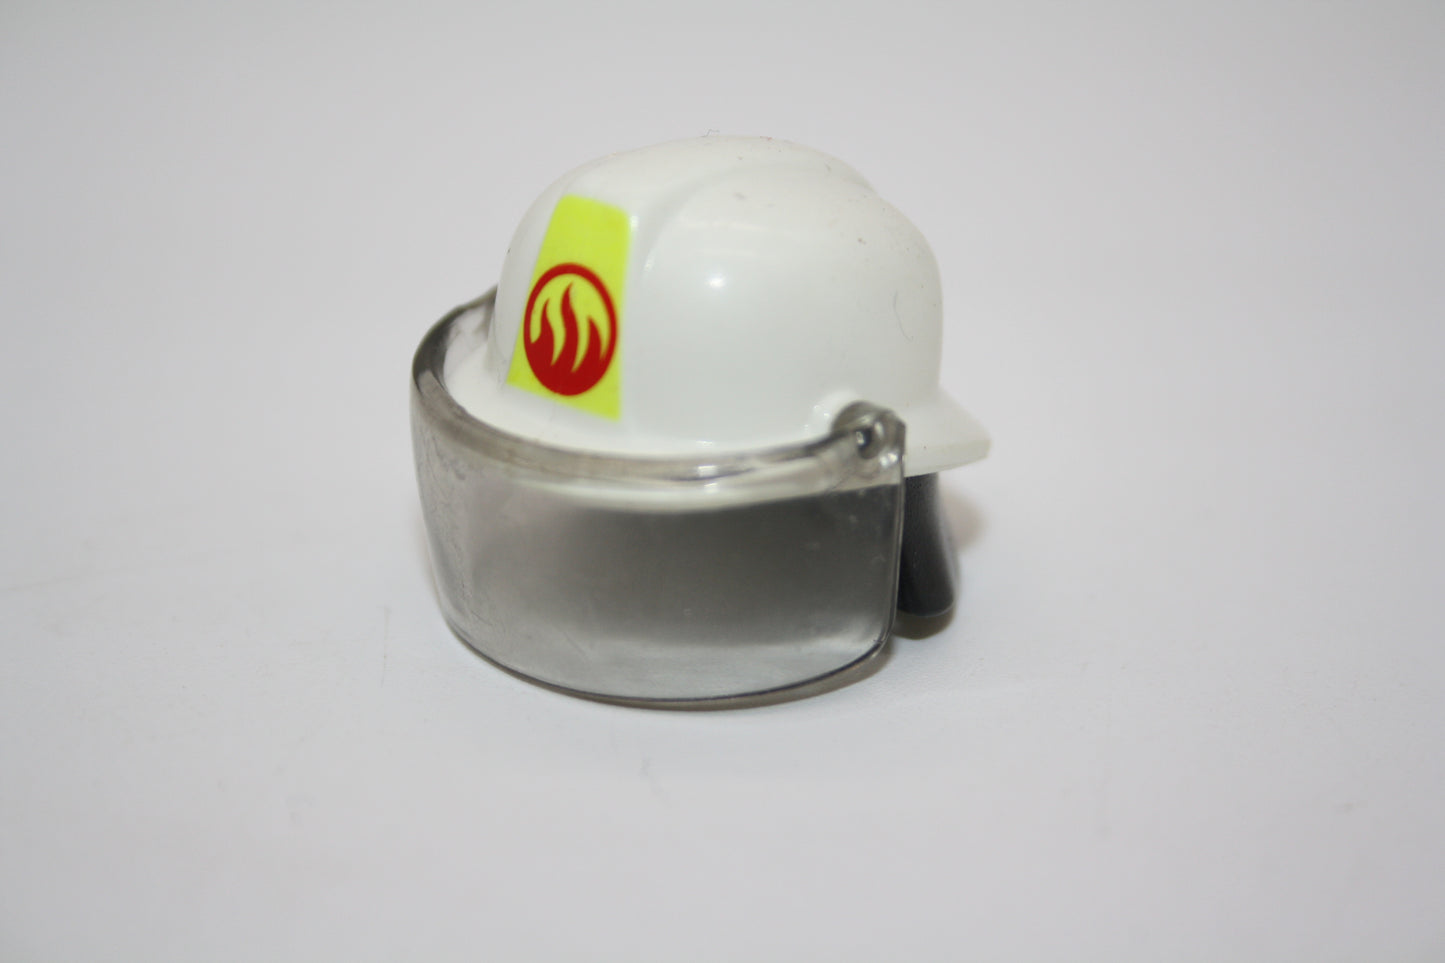 Playmobil® - Feuerwehrhelm/Schutzhelm mit Visier - rot-gelbes Logo